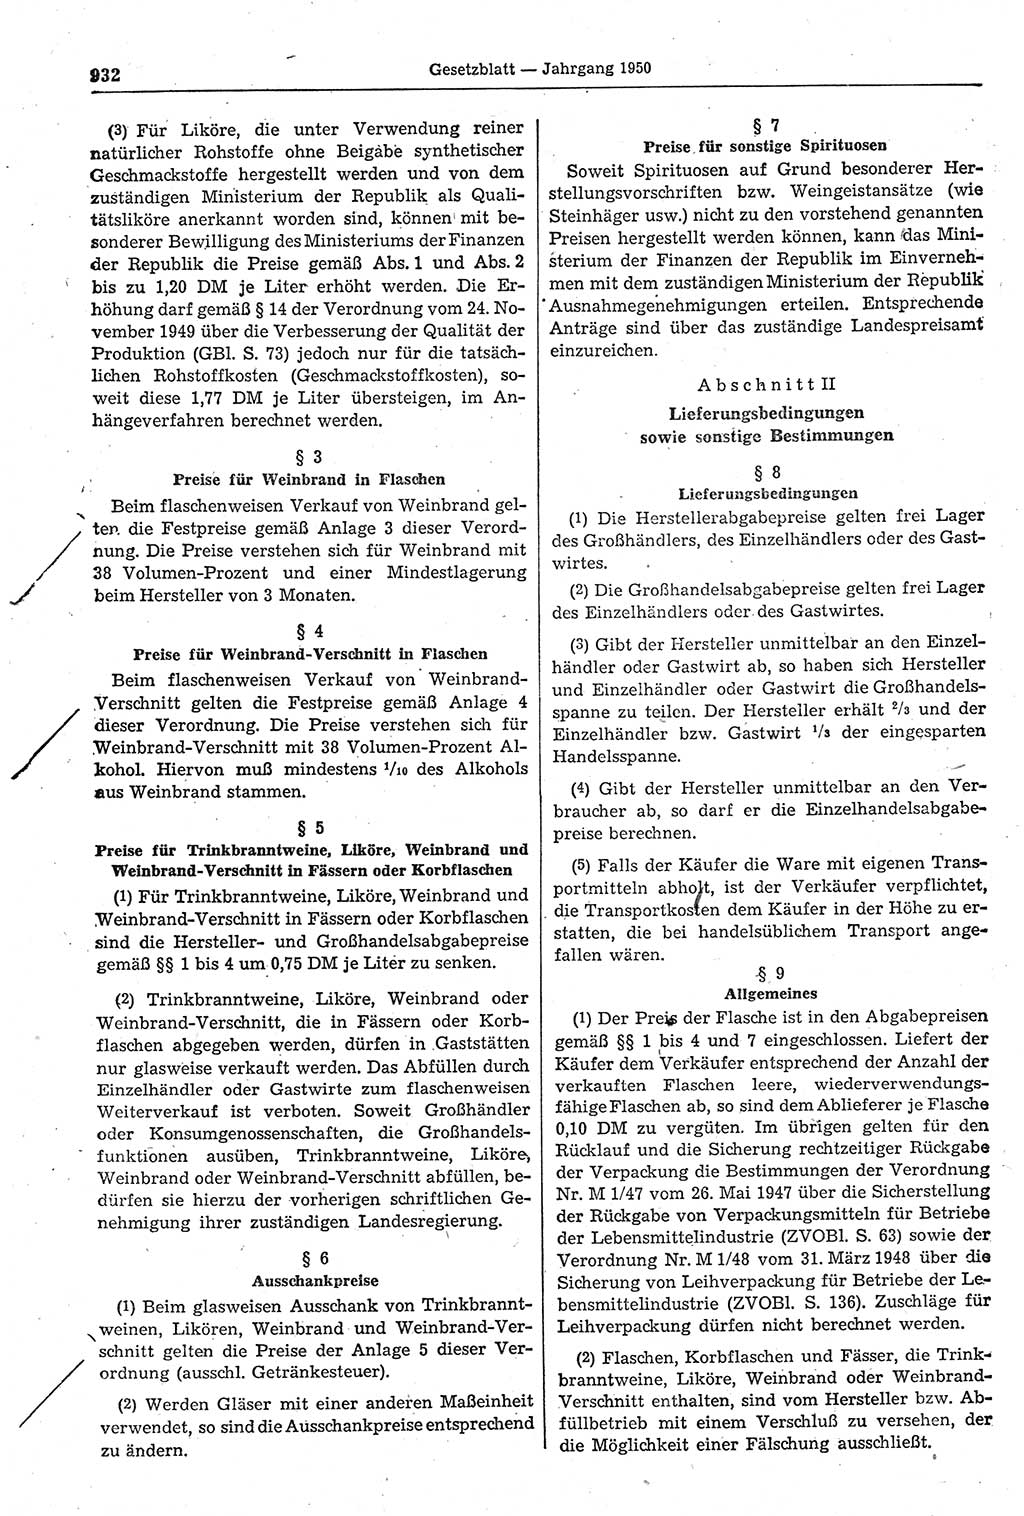 Gesetzblatt (GBl.) der Deutschen Demokratischen Republik (DDR) 1950, Seite 932 (GBl. DDR 1950, S. 932)